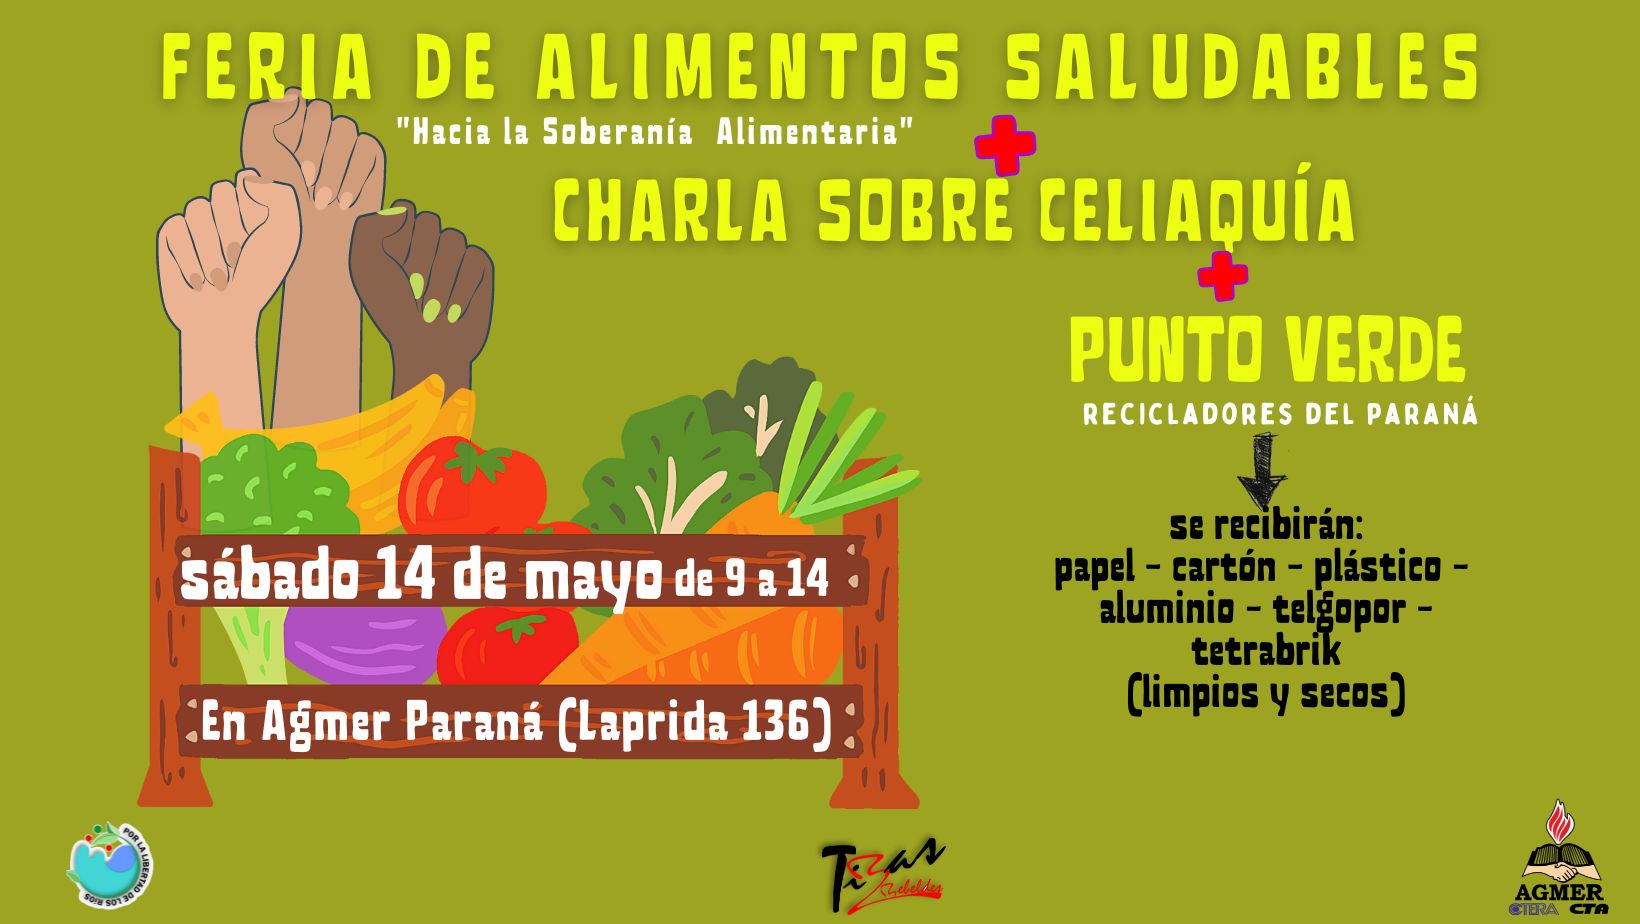 Feria de alimentos saludables 14 de mayo